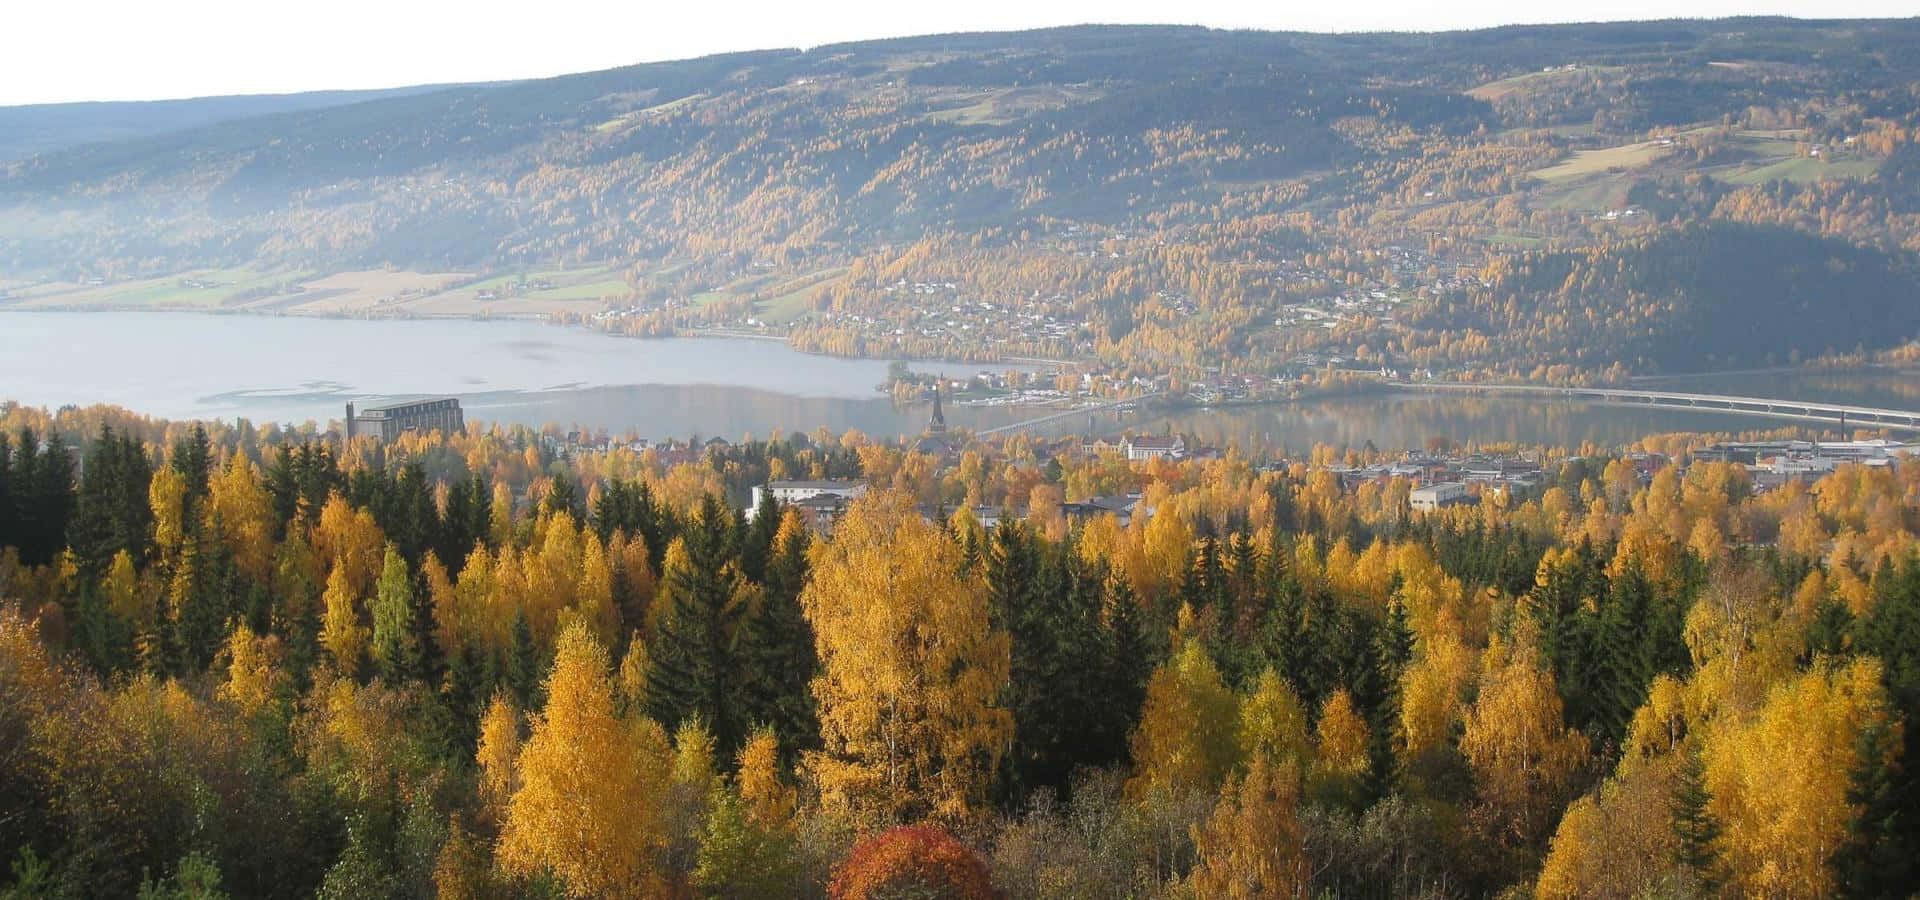 Autumnin Lillehammer Norway Wallpaper